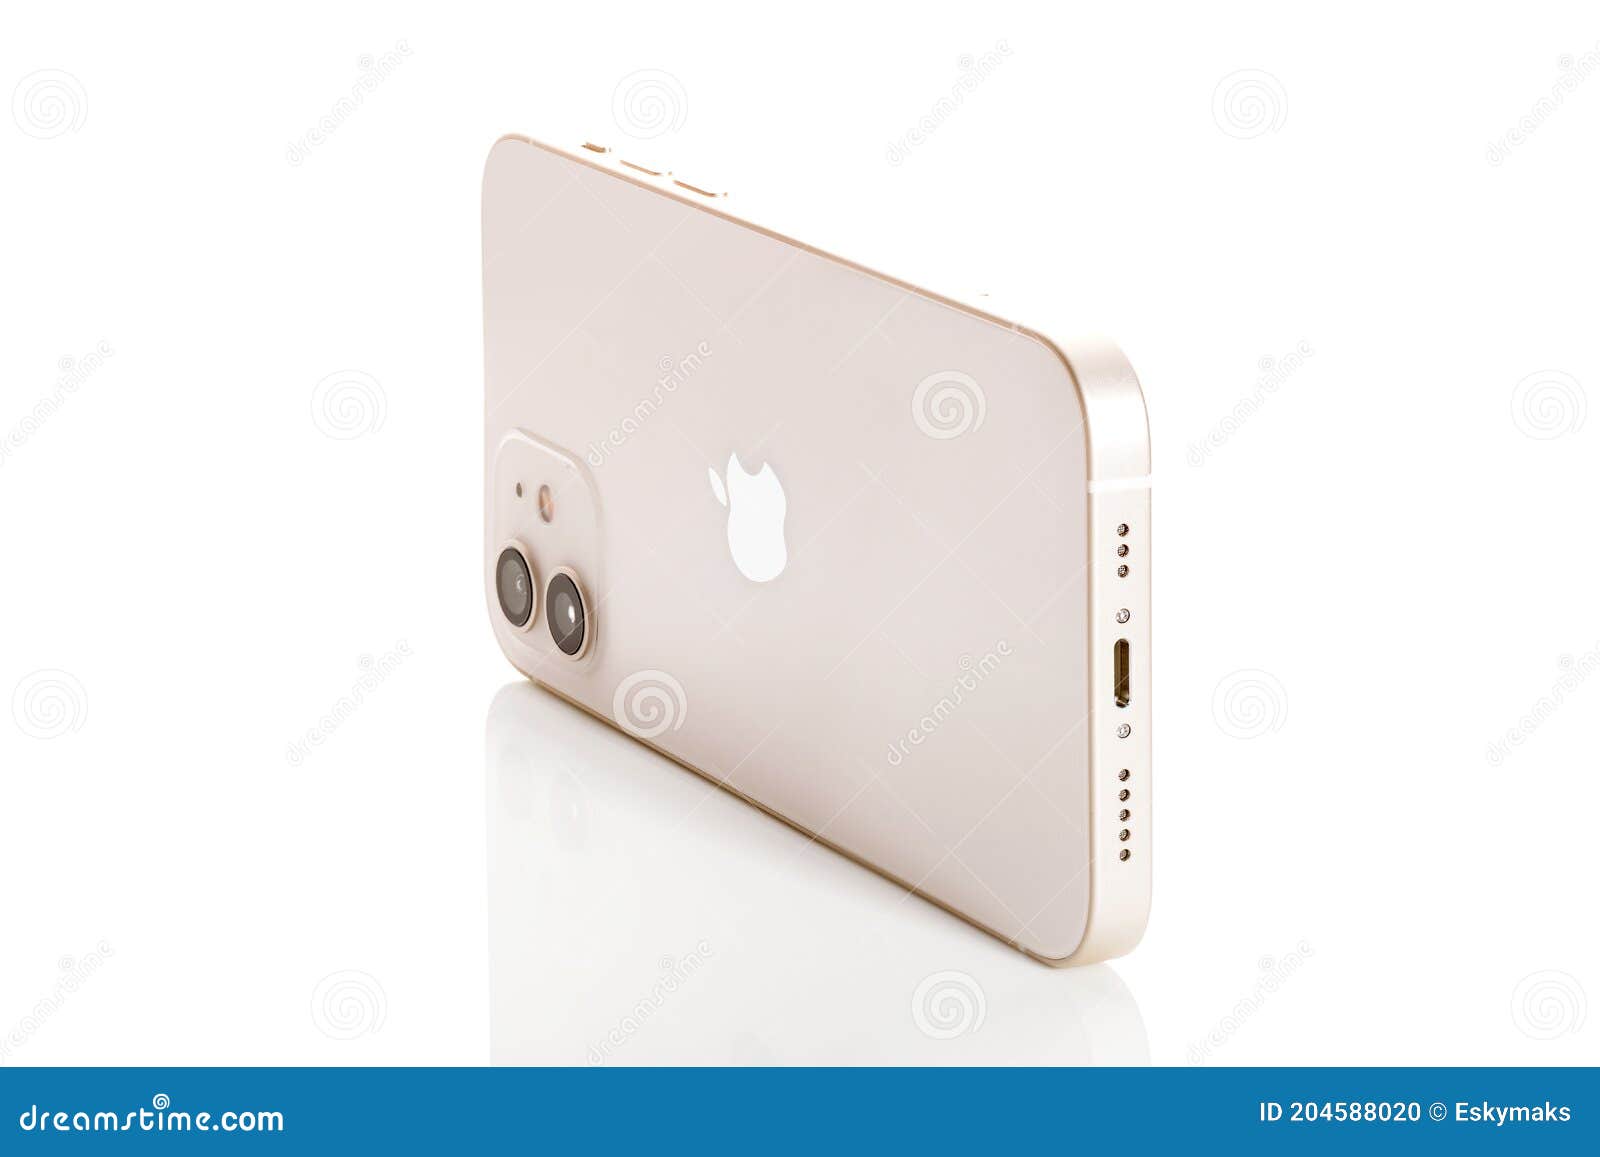 スマートフォン/携帯電話 スマートフォン本体 IPhone 12 White side view editorial image. Image of iphone 